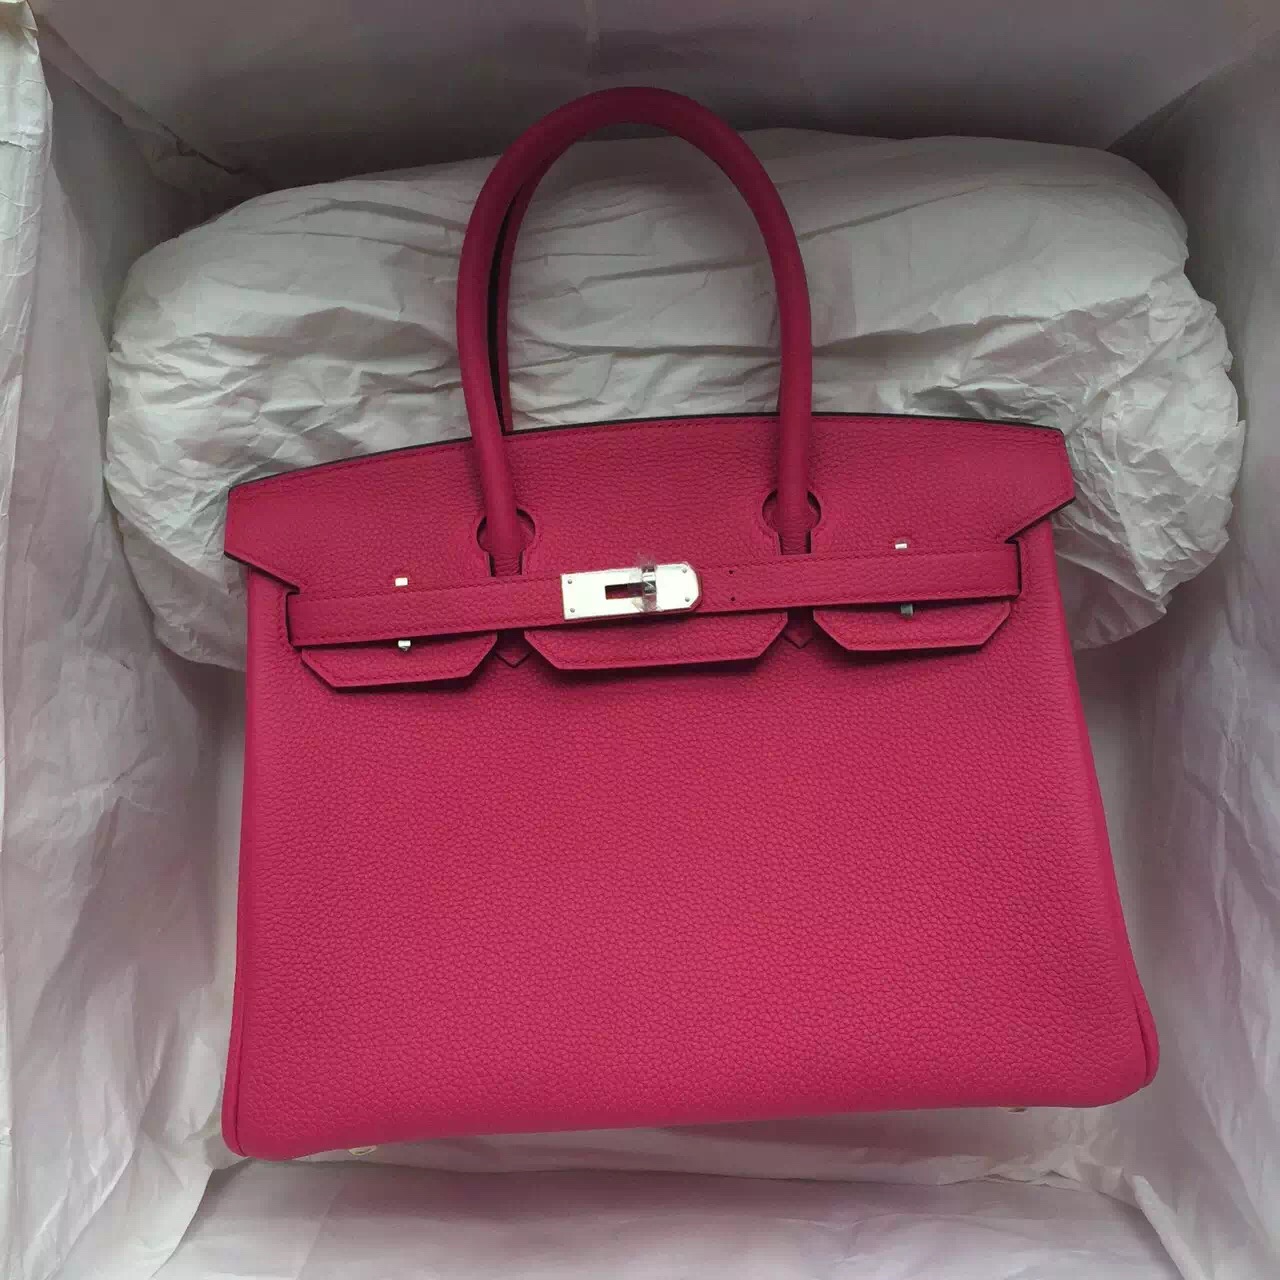 Wholesale Hermes 5R Hot Pink Togo Leather Birkin Bag 30CM Women&#8217;s Tote Bag